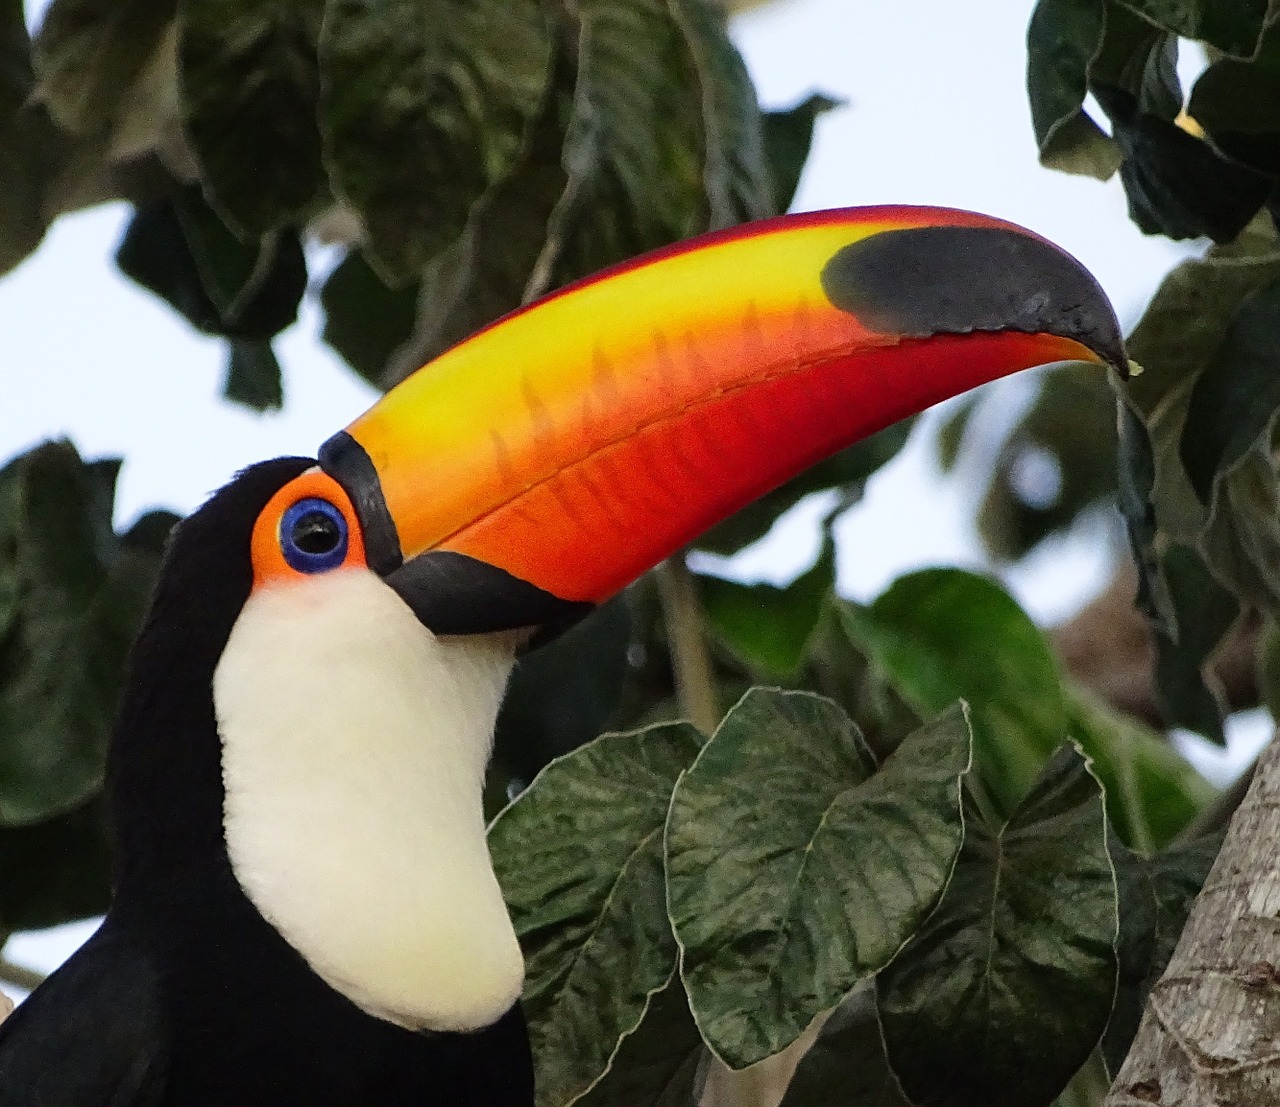 tucano bird brazil free photo